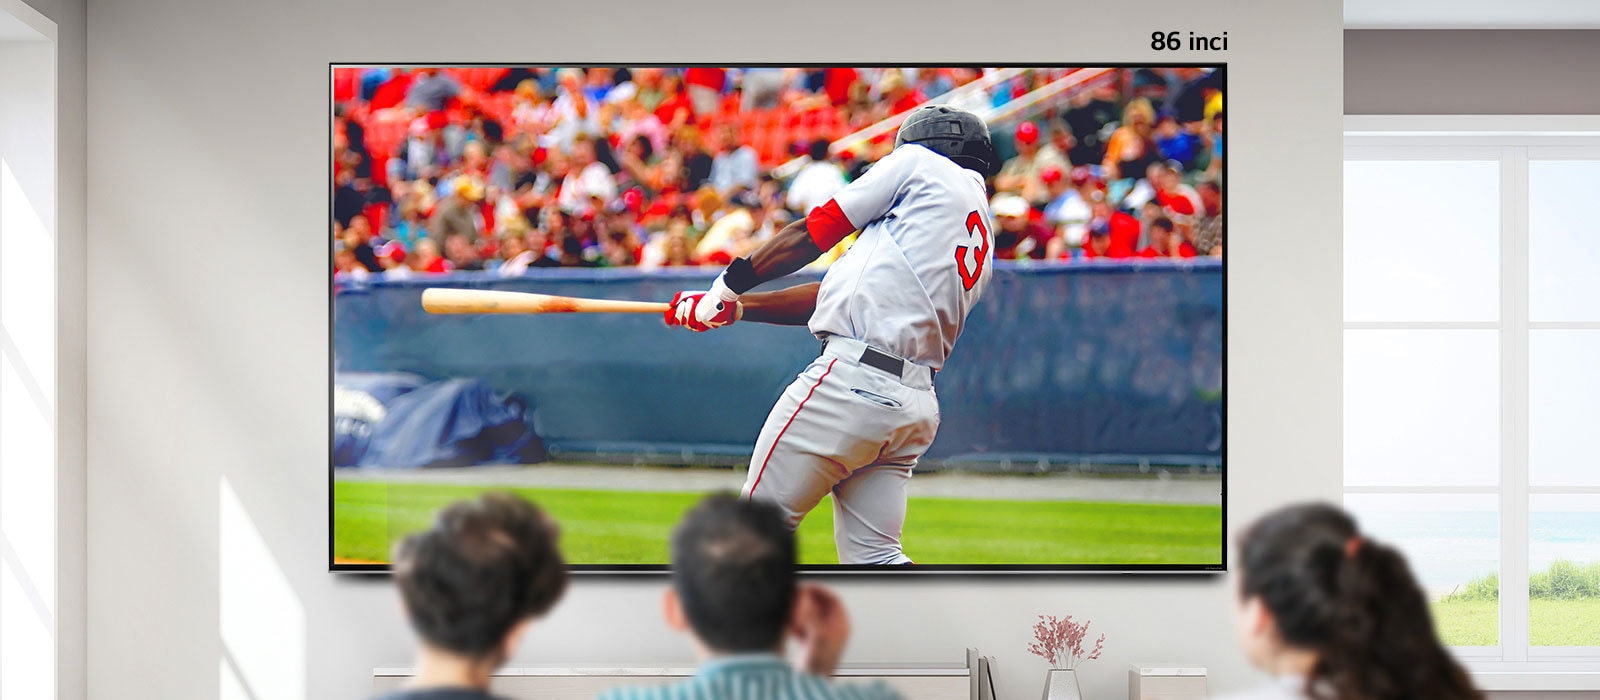 O imagine derulabilă cu trei persoane care urmăresc un meci de baseball pe un televizor mare montat pe perete. Pe măsură ce derulați de la stânga la dreapta, ecranul devine mai mare.